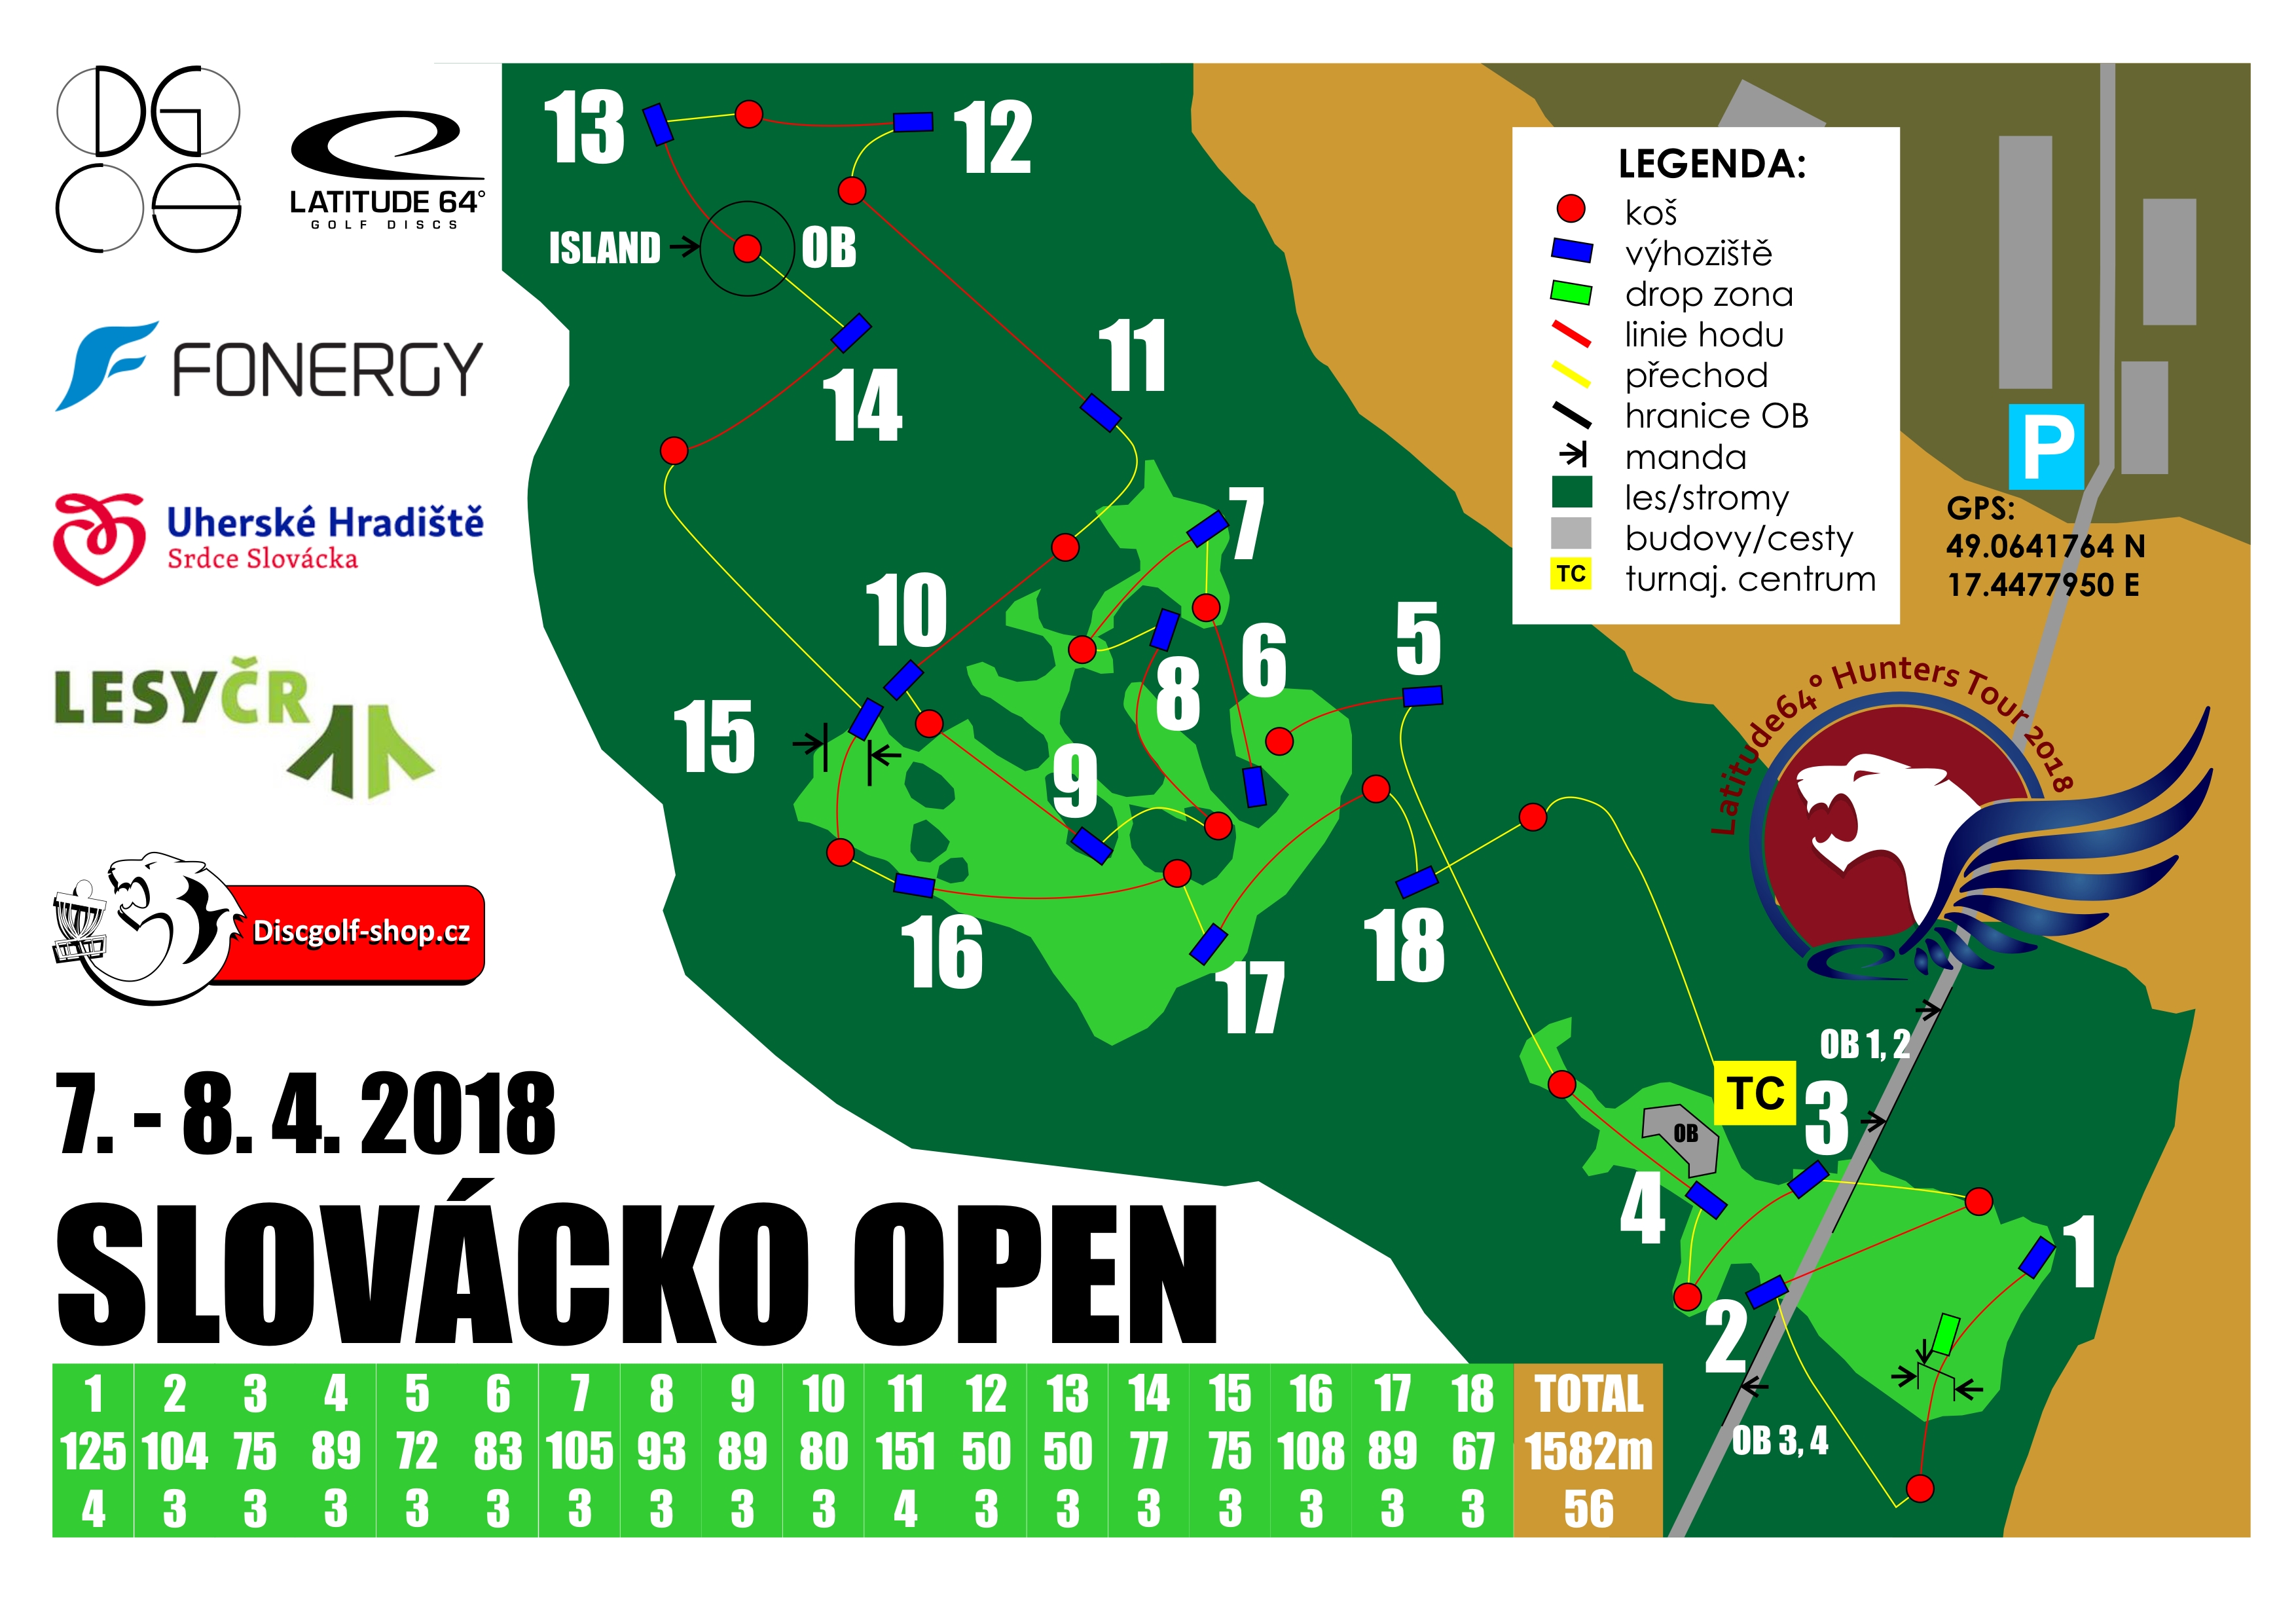 Registrace na Slovácko Open 2018